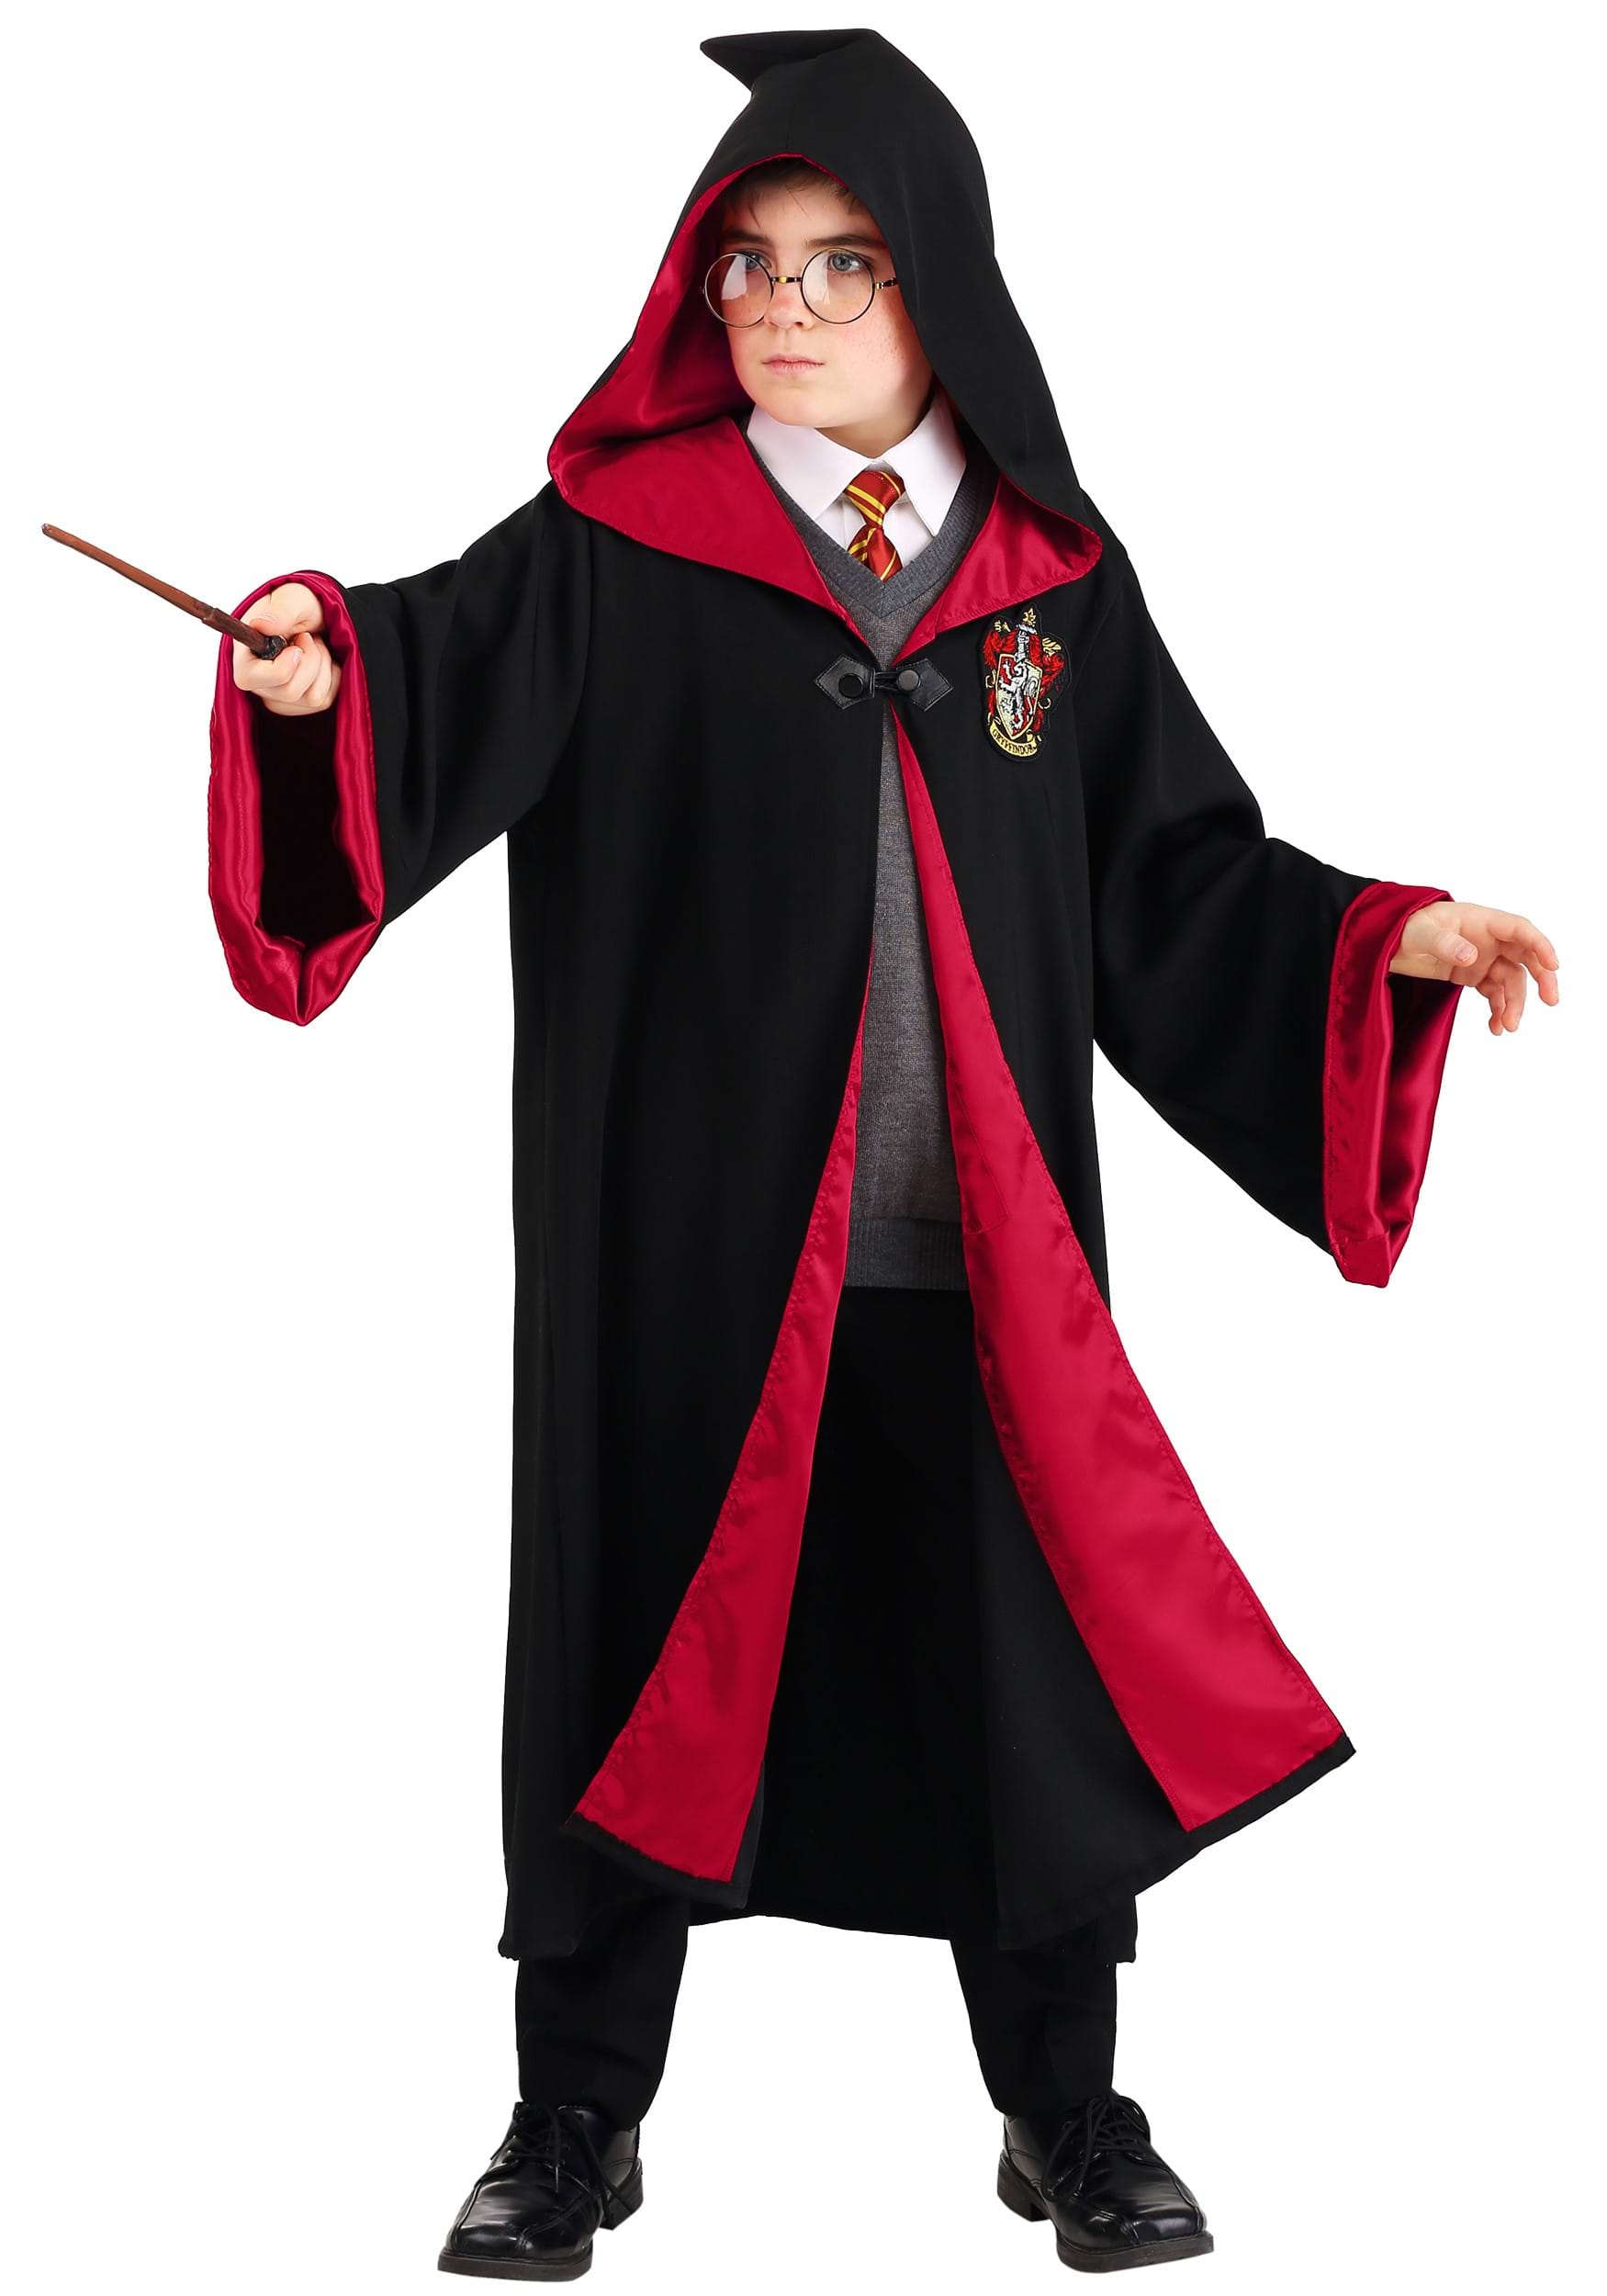 Costume Harry Potter Deluxe da bambino per 36,50 €